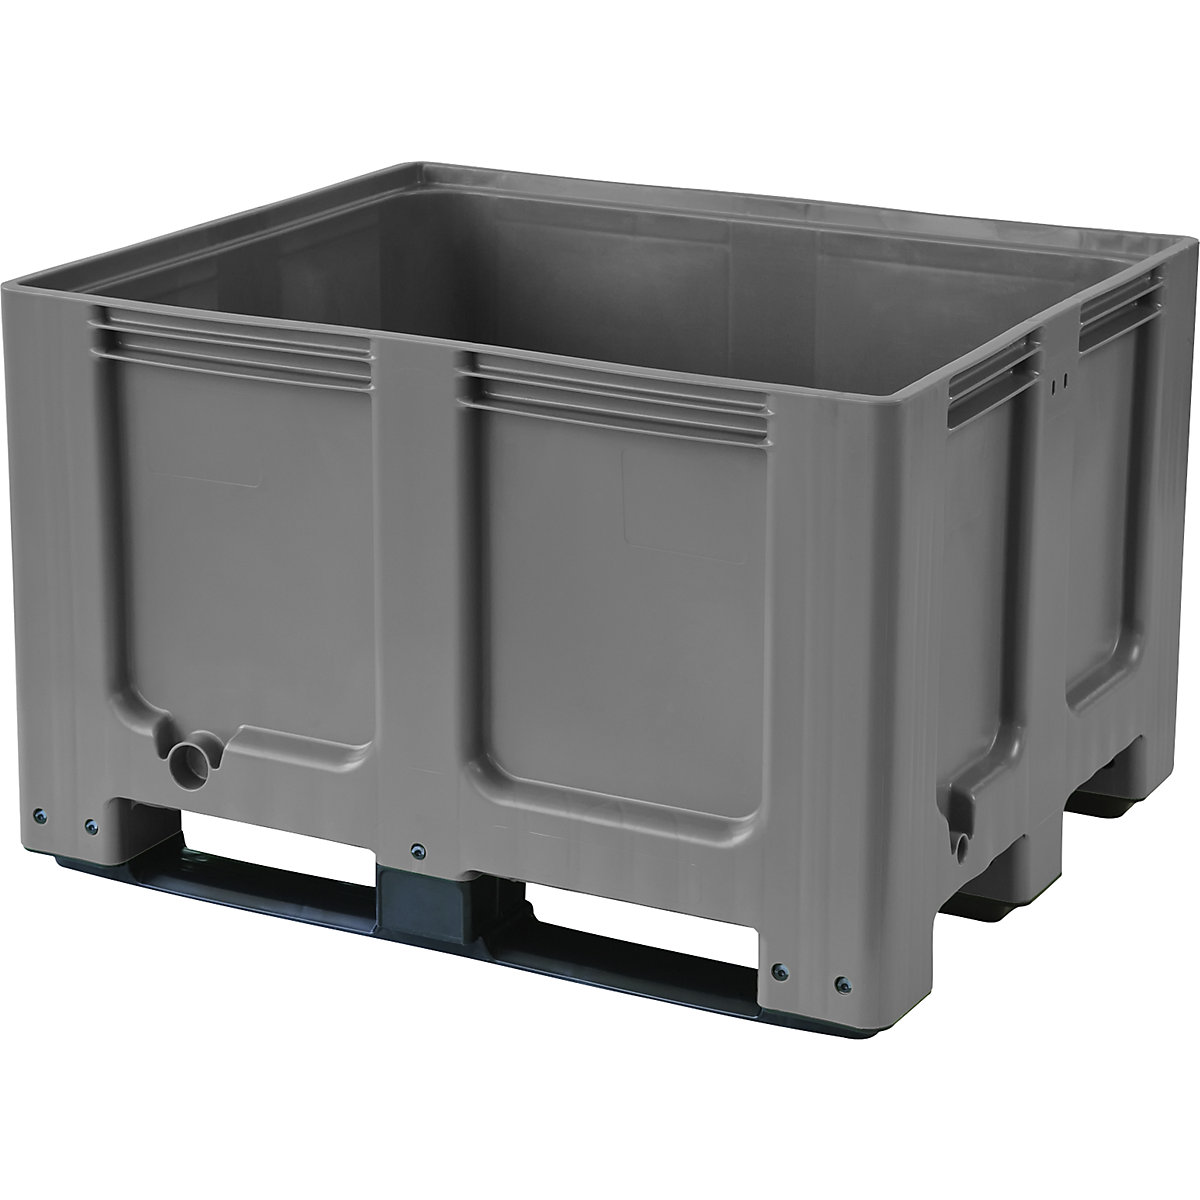 Palletcontainer, van HDPE, l x b x h = 1200 x 1000 x 790 mm, 3 lopers, gesloten, grijs-10